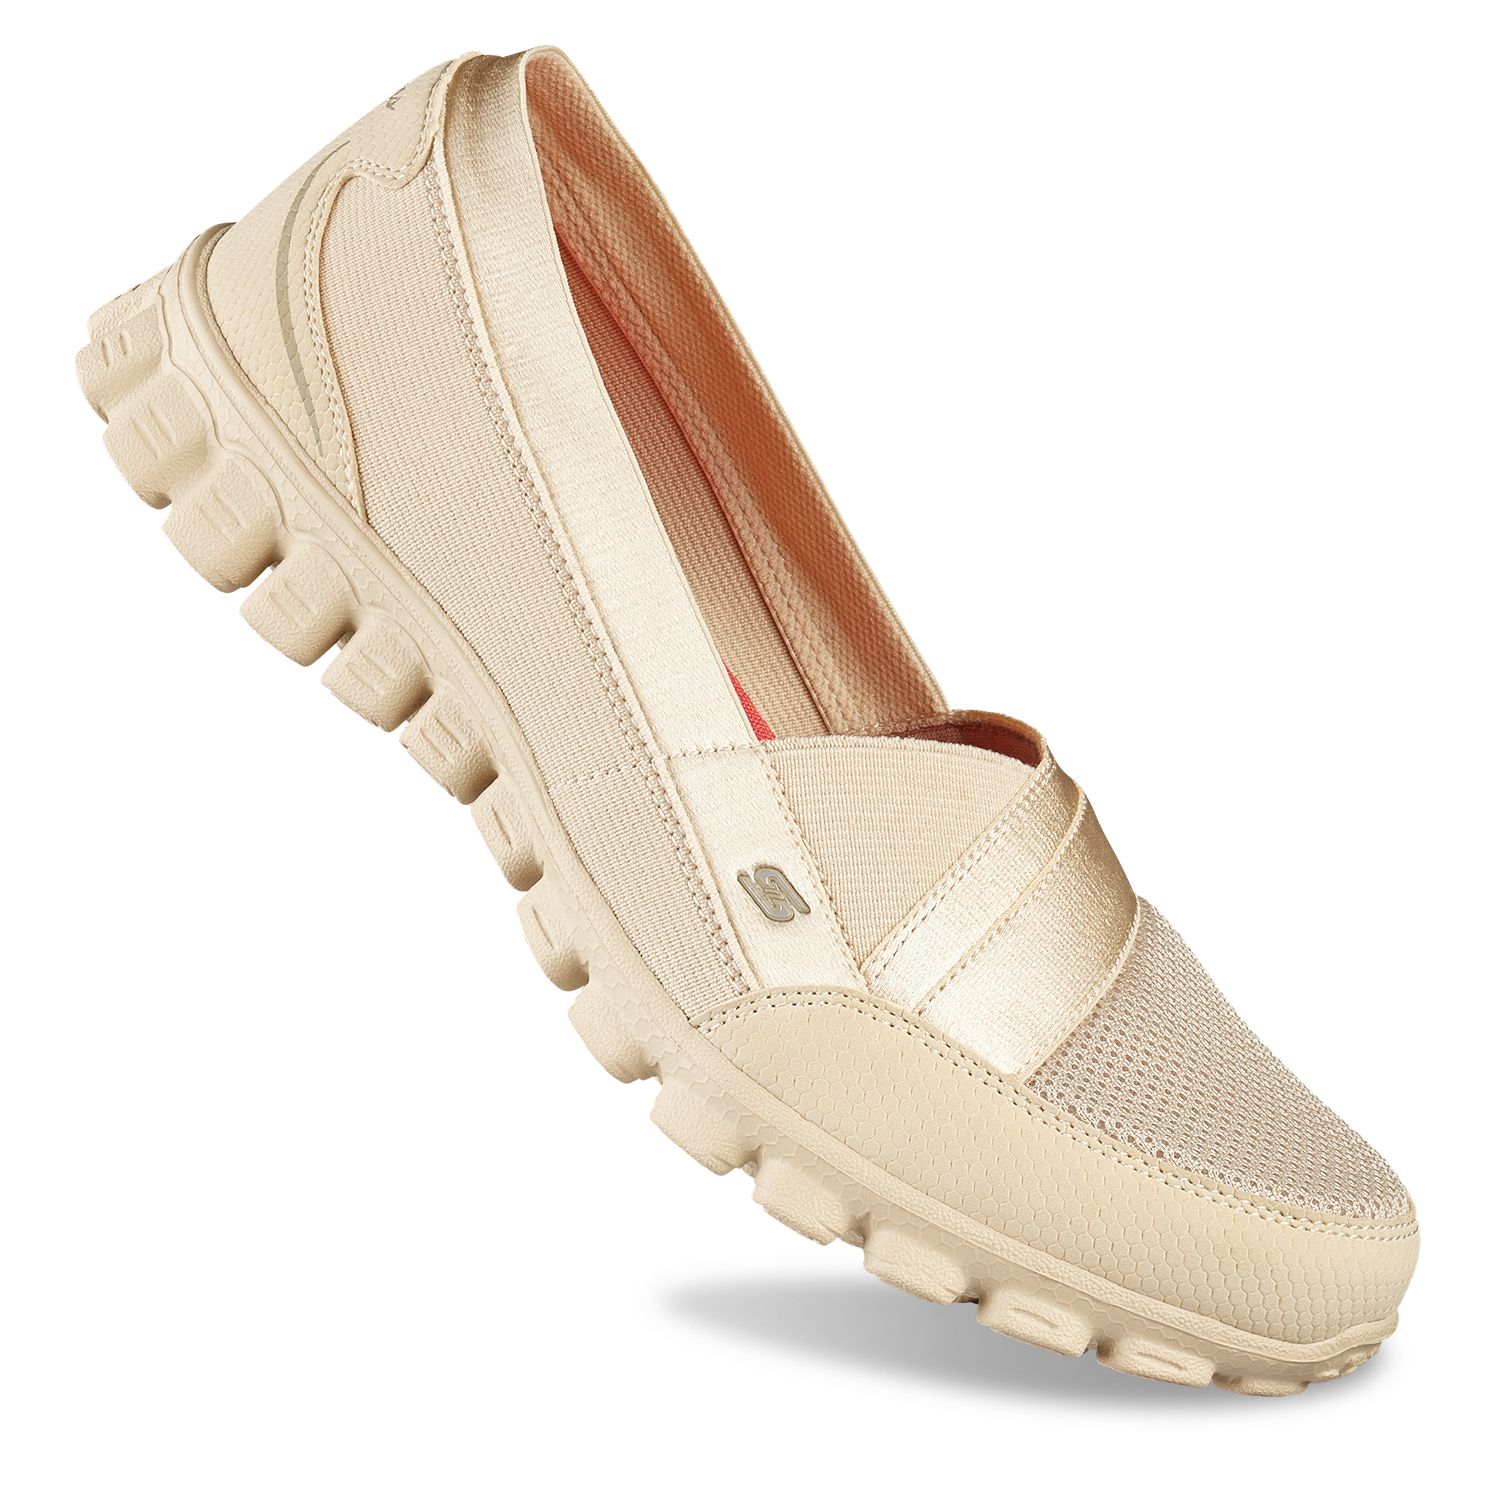 skechers women's ez flex 2 quipster comfort shoes